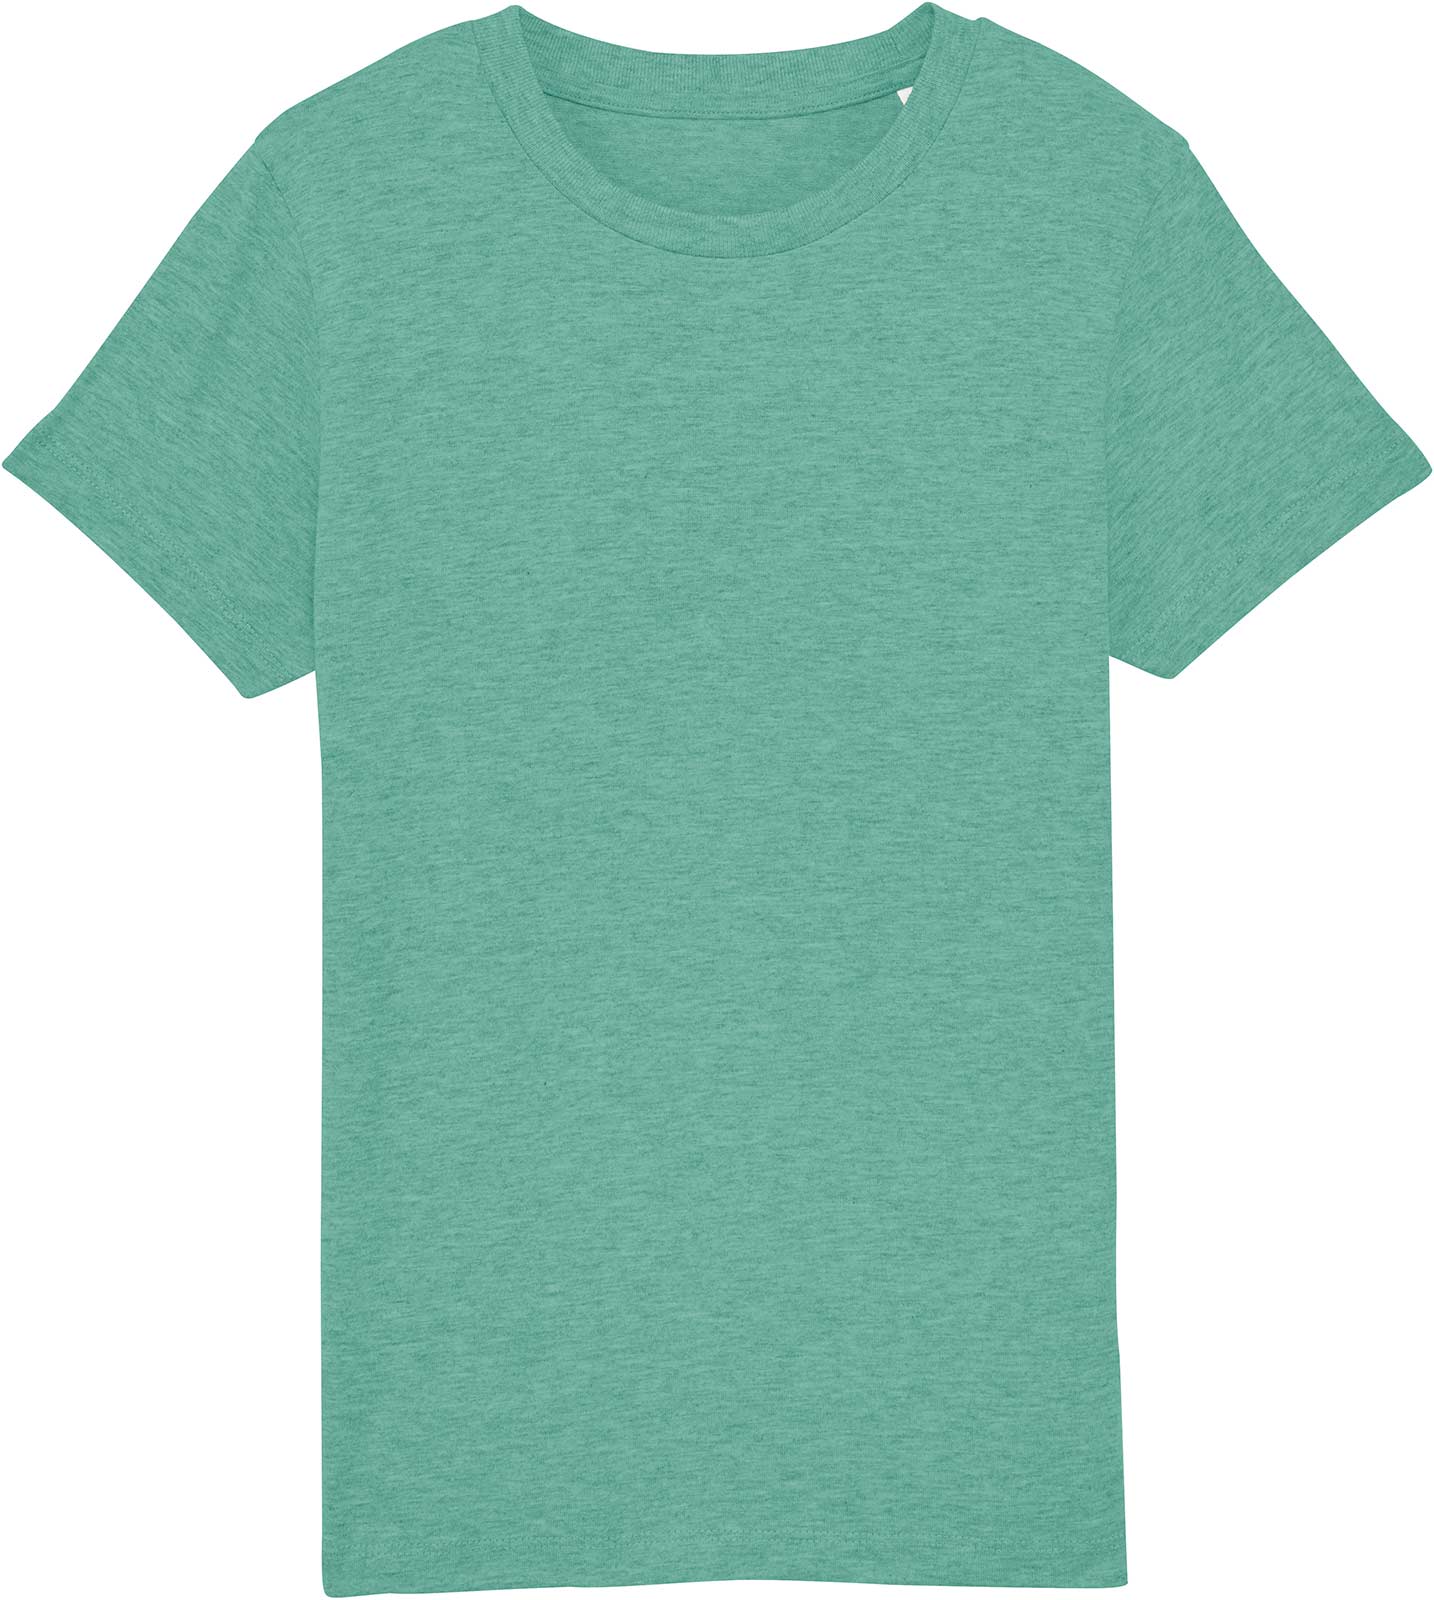 Bio T-Shirt für Kinder | grün-meliert | Bio-Baumwolle